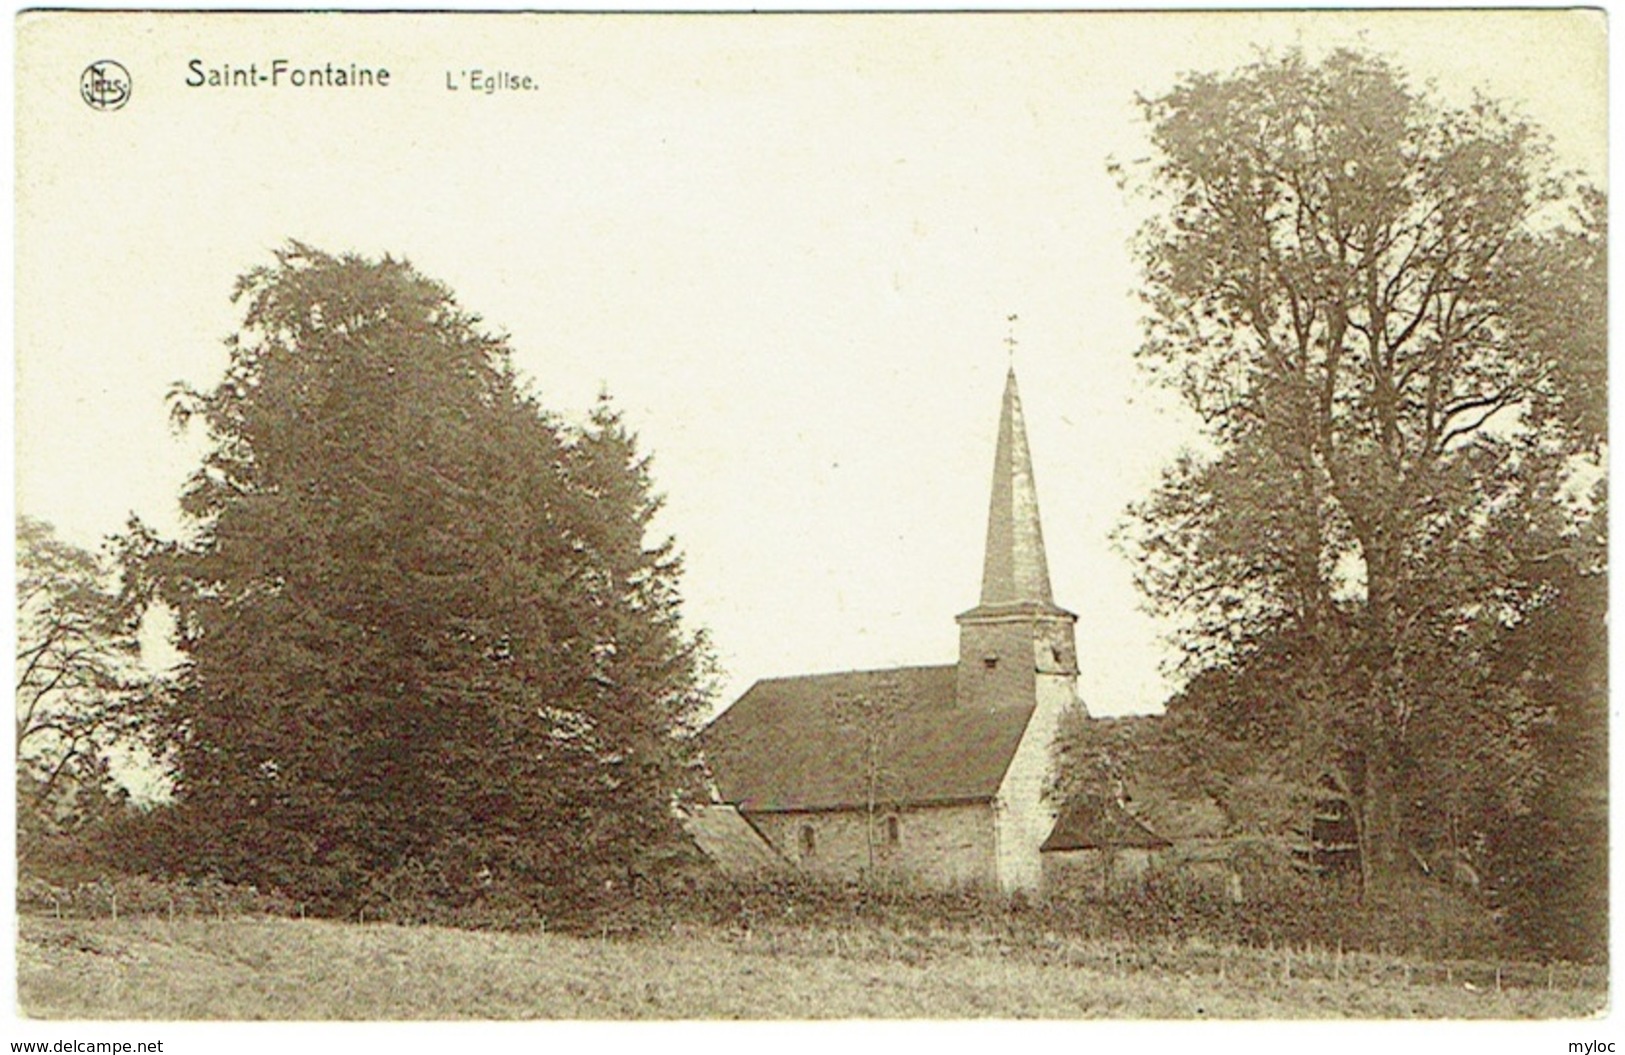 Saint-Fontaine. Eglise. - Clavier